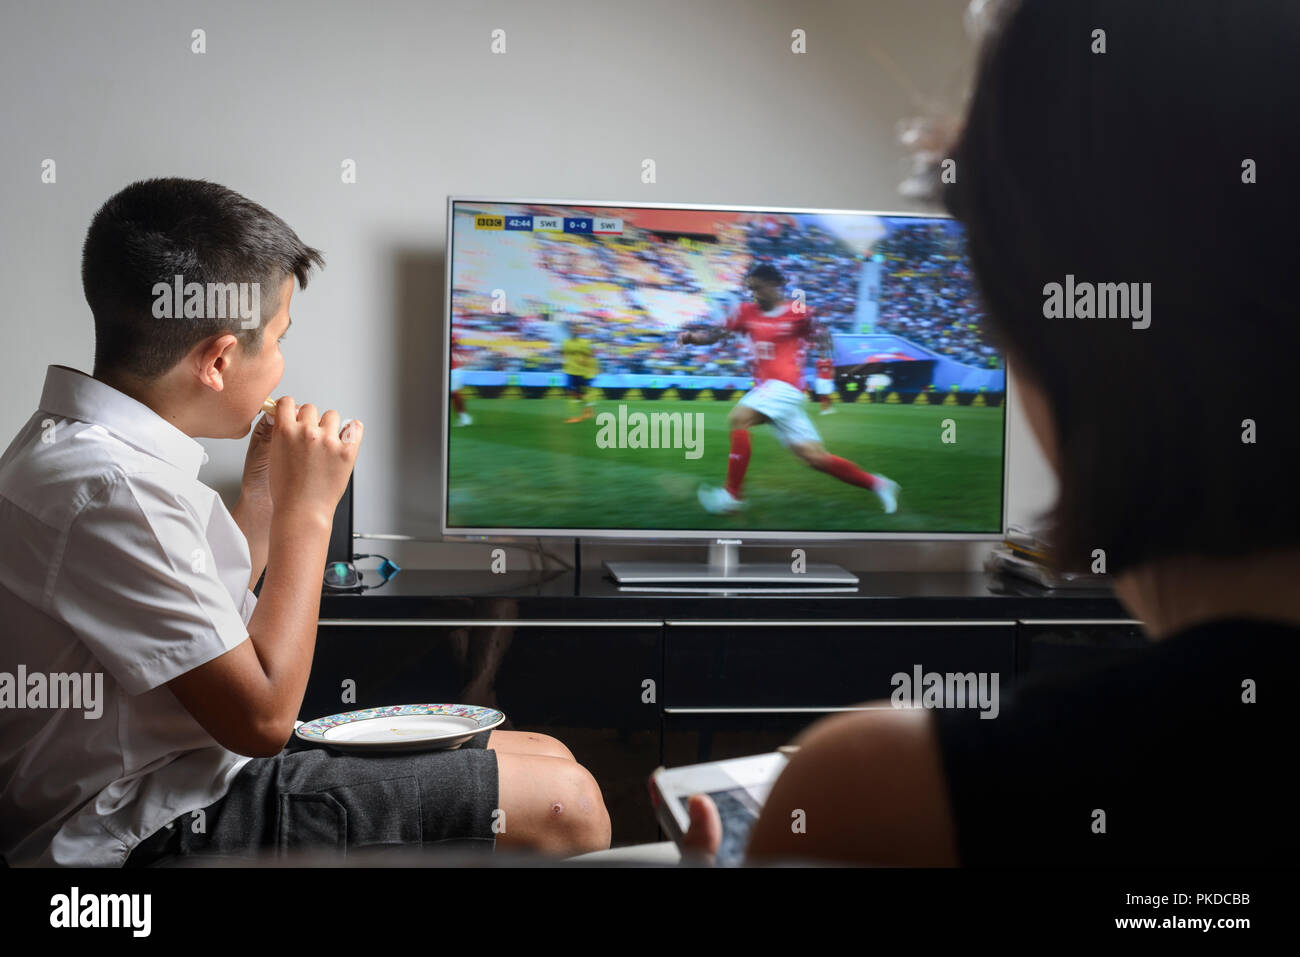 Schüler, die 10 Jahre alt, in Schuluniform Snacking und beobachten Fußballspiel im Fernsehen Stockfoto